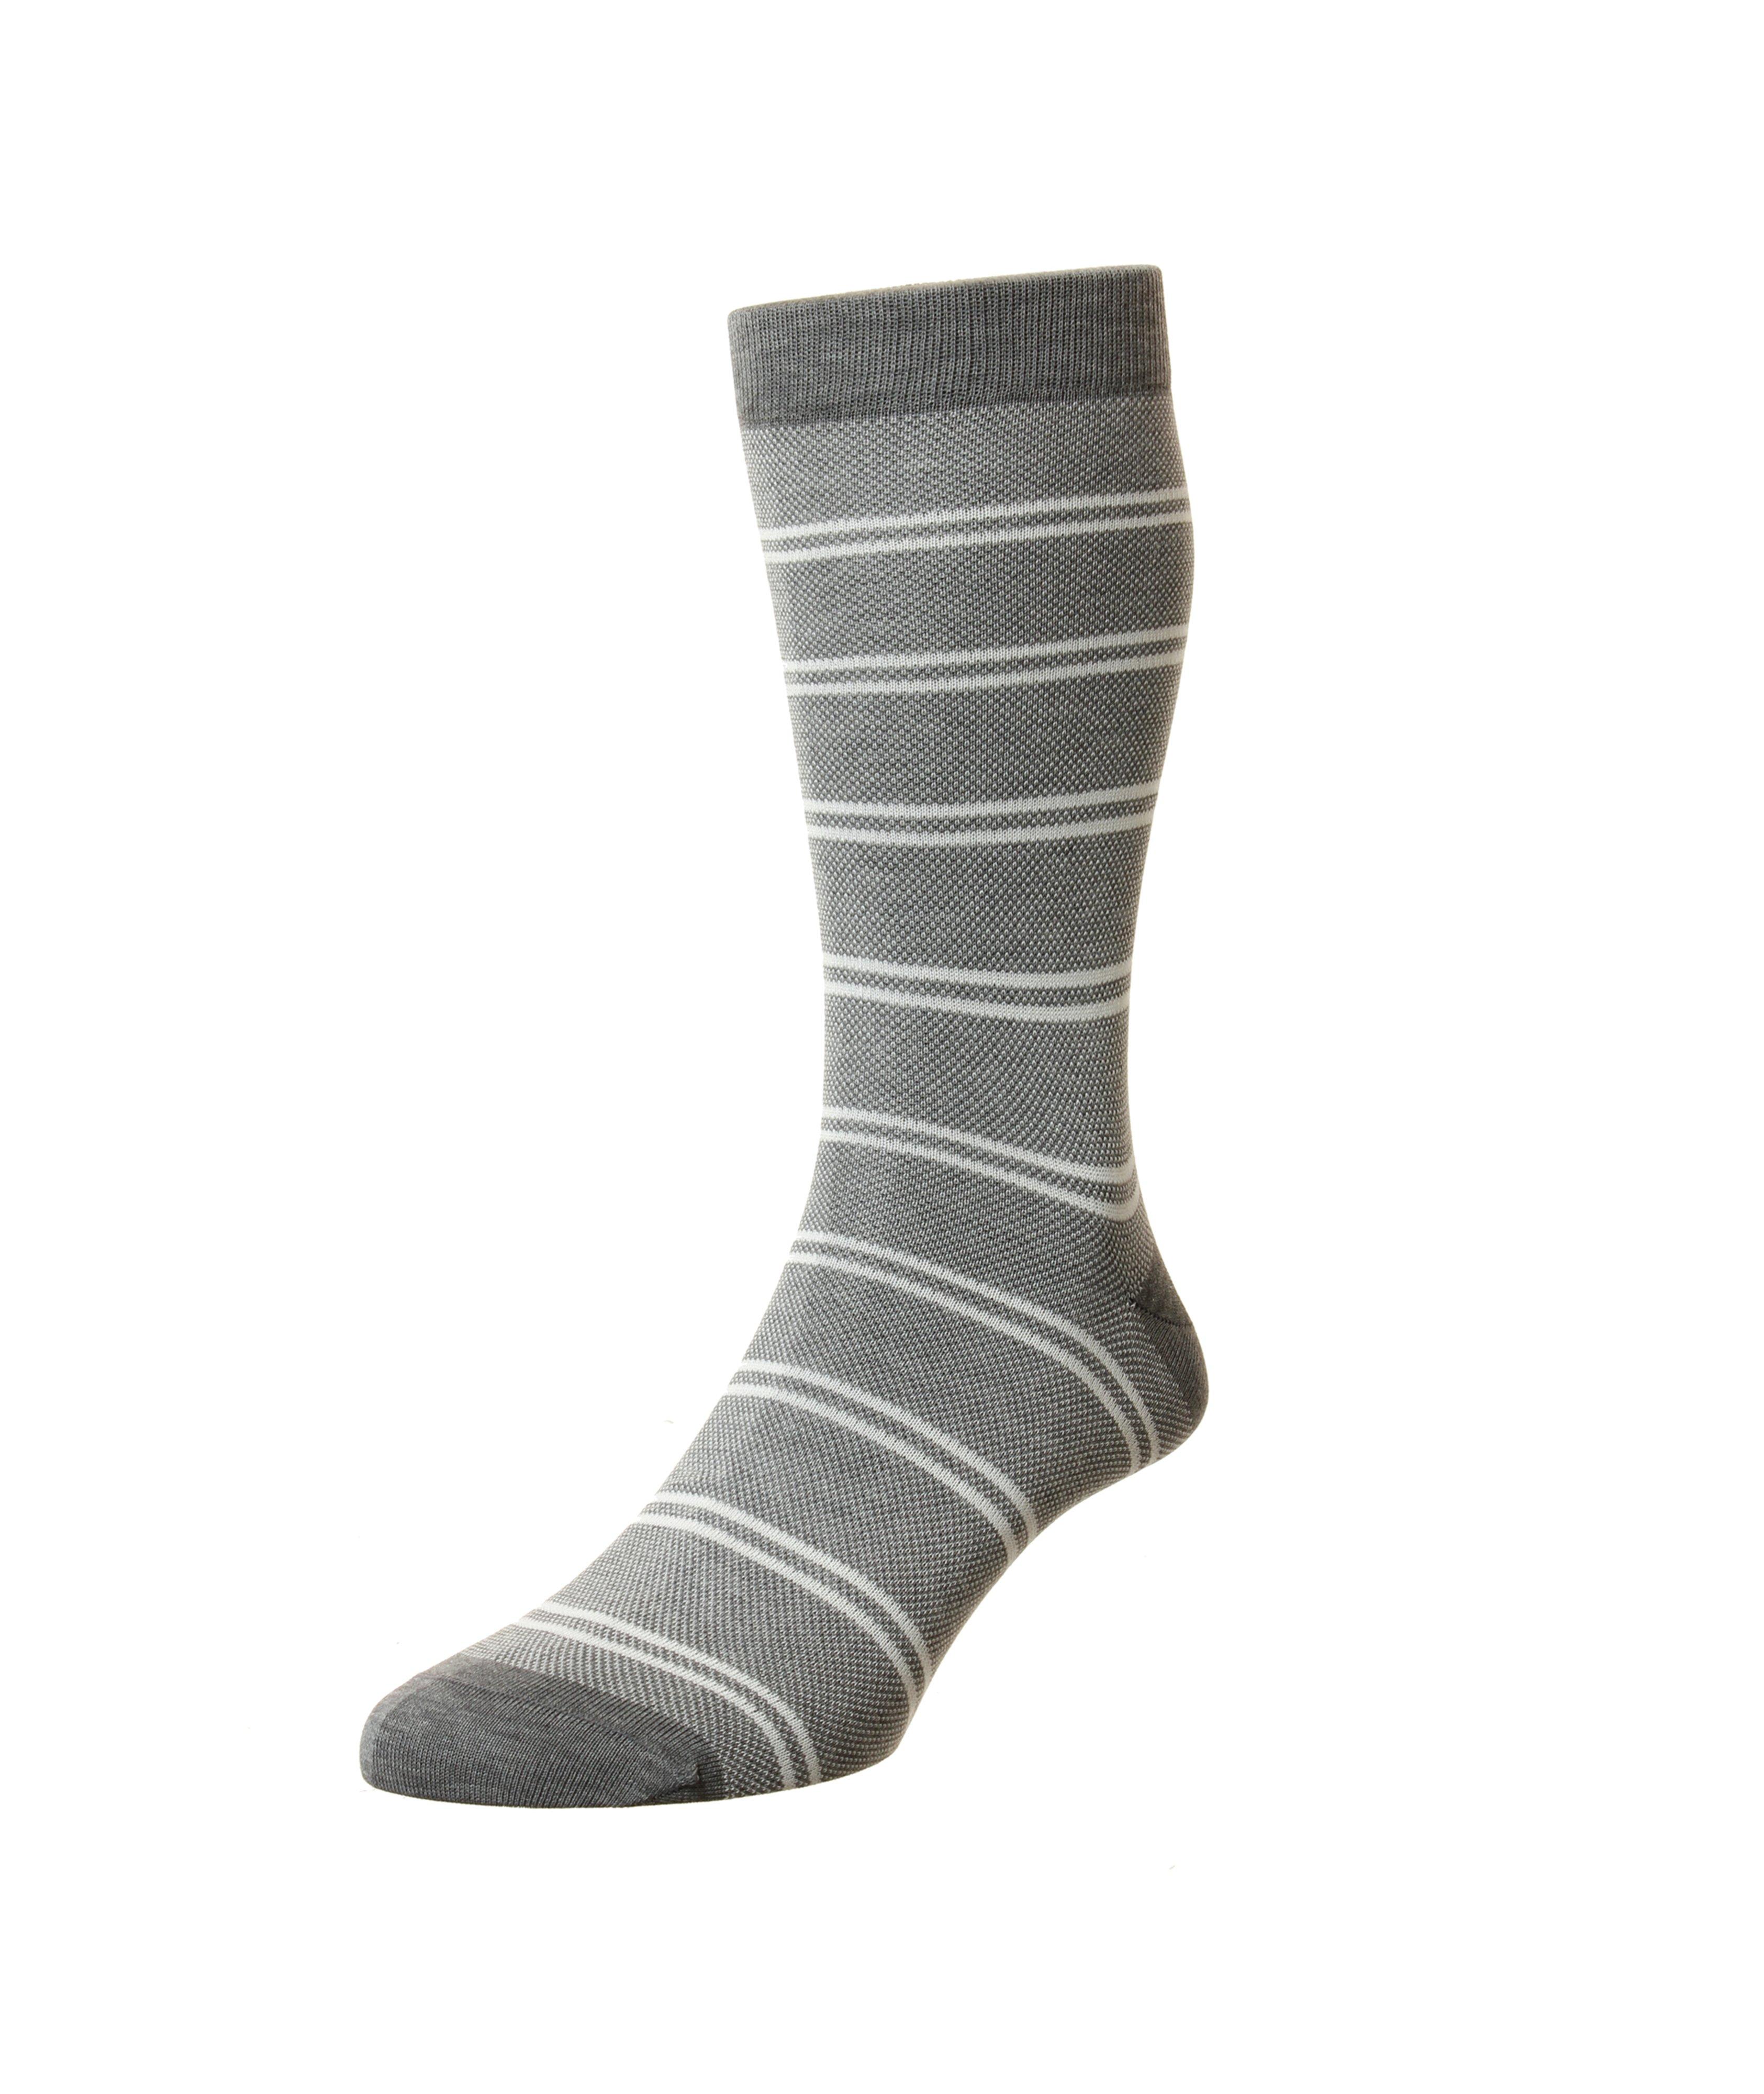 Striped Birdseye Cotton-Blend Dress Socks image 0